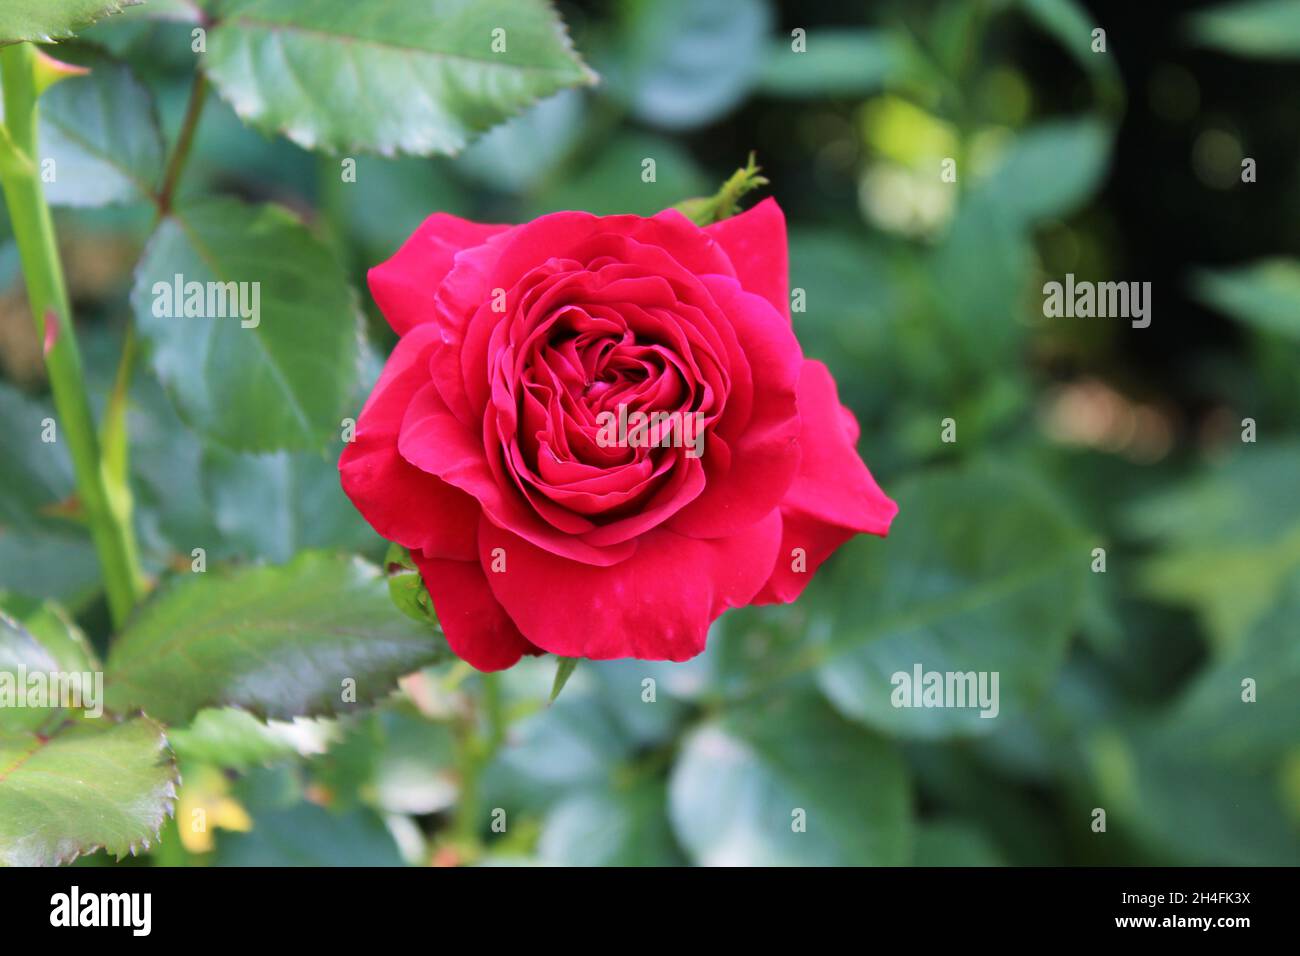 Die Blüte einer gefüllten roten Rose mit Rosenblättern (Nahaufnahme) in einem Garten. Stock Photo